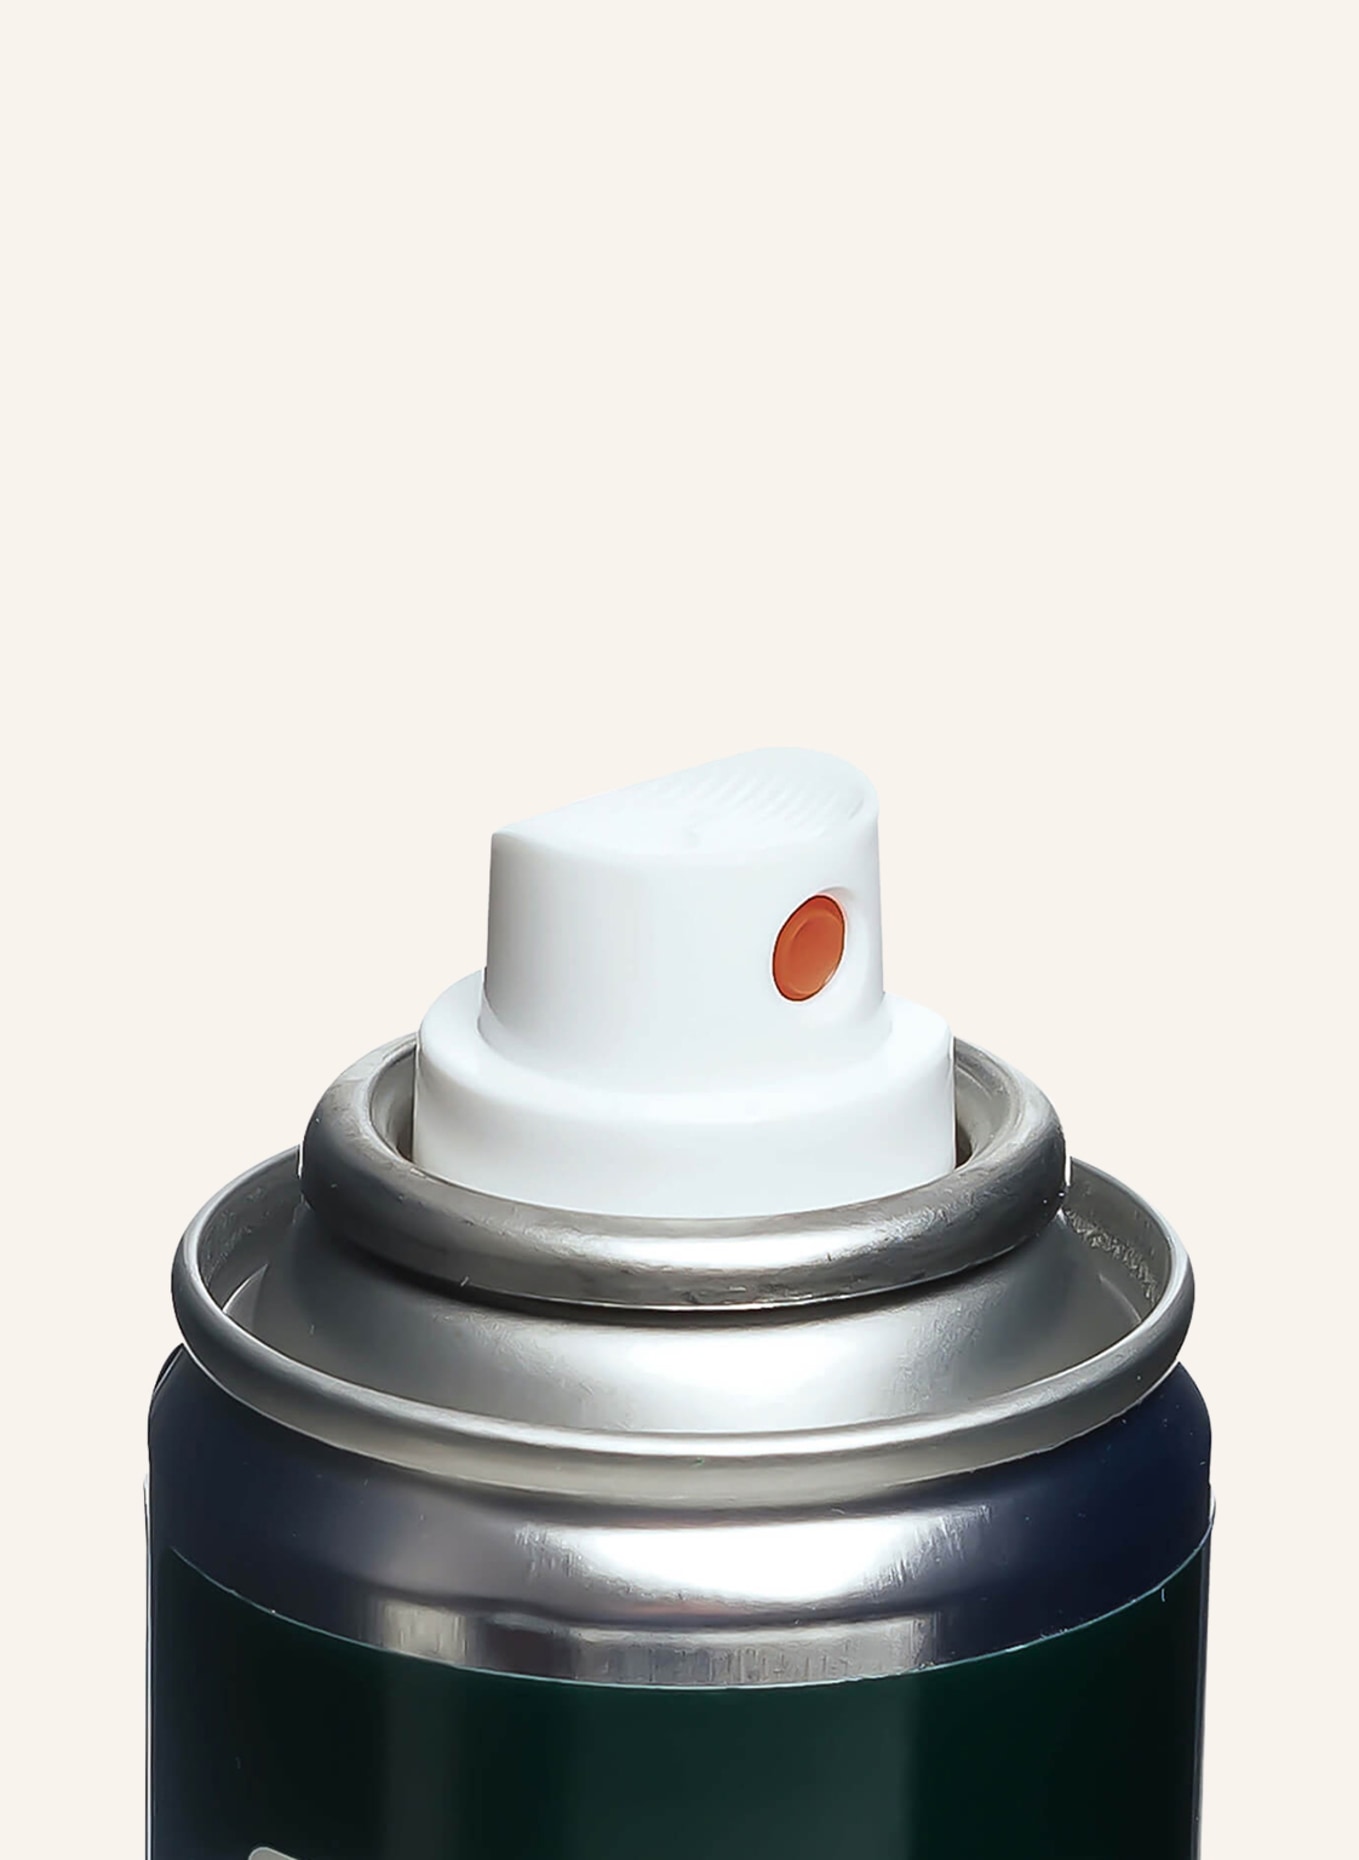 Collonil Shoe spray, Color: WHITE (Image 4)